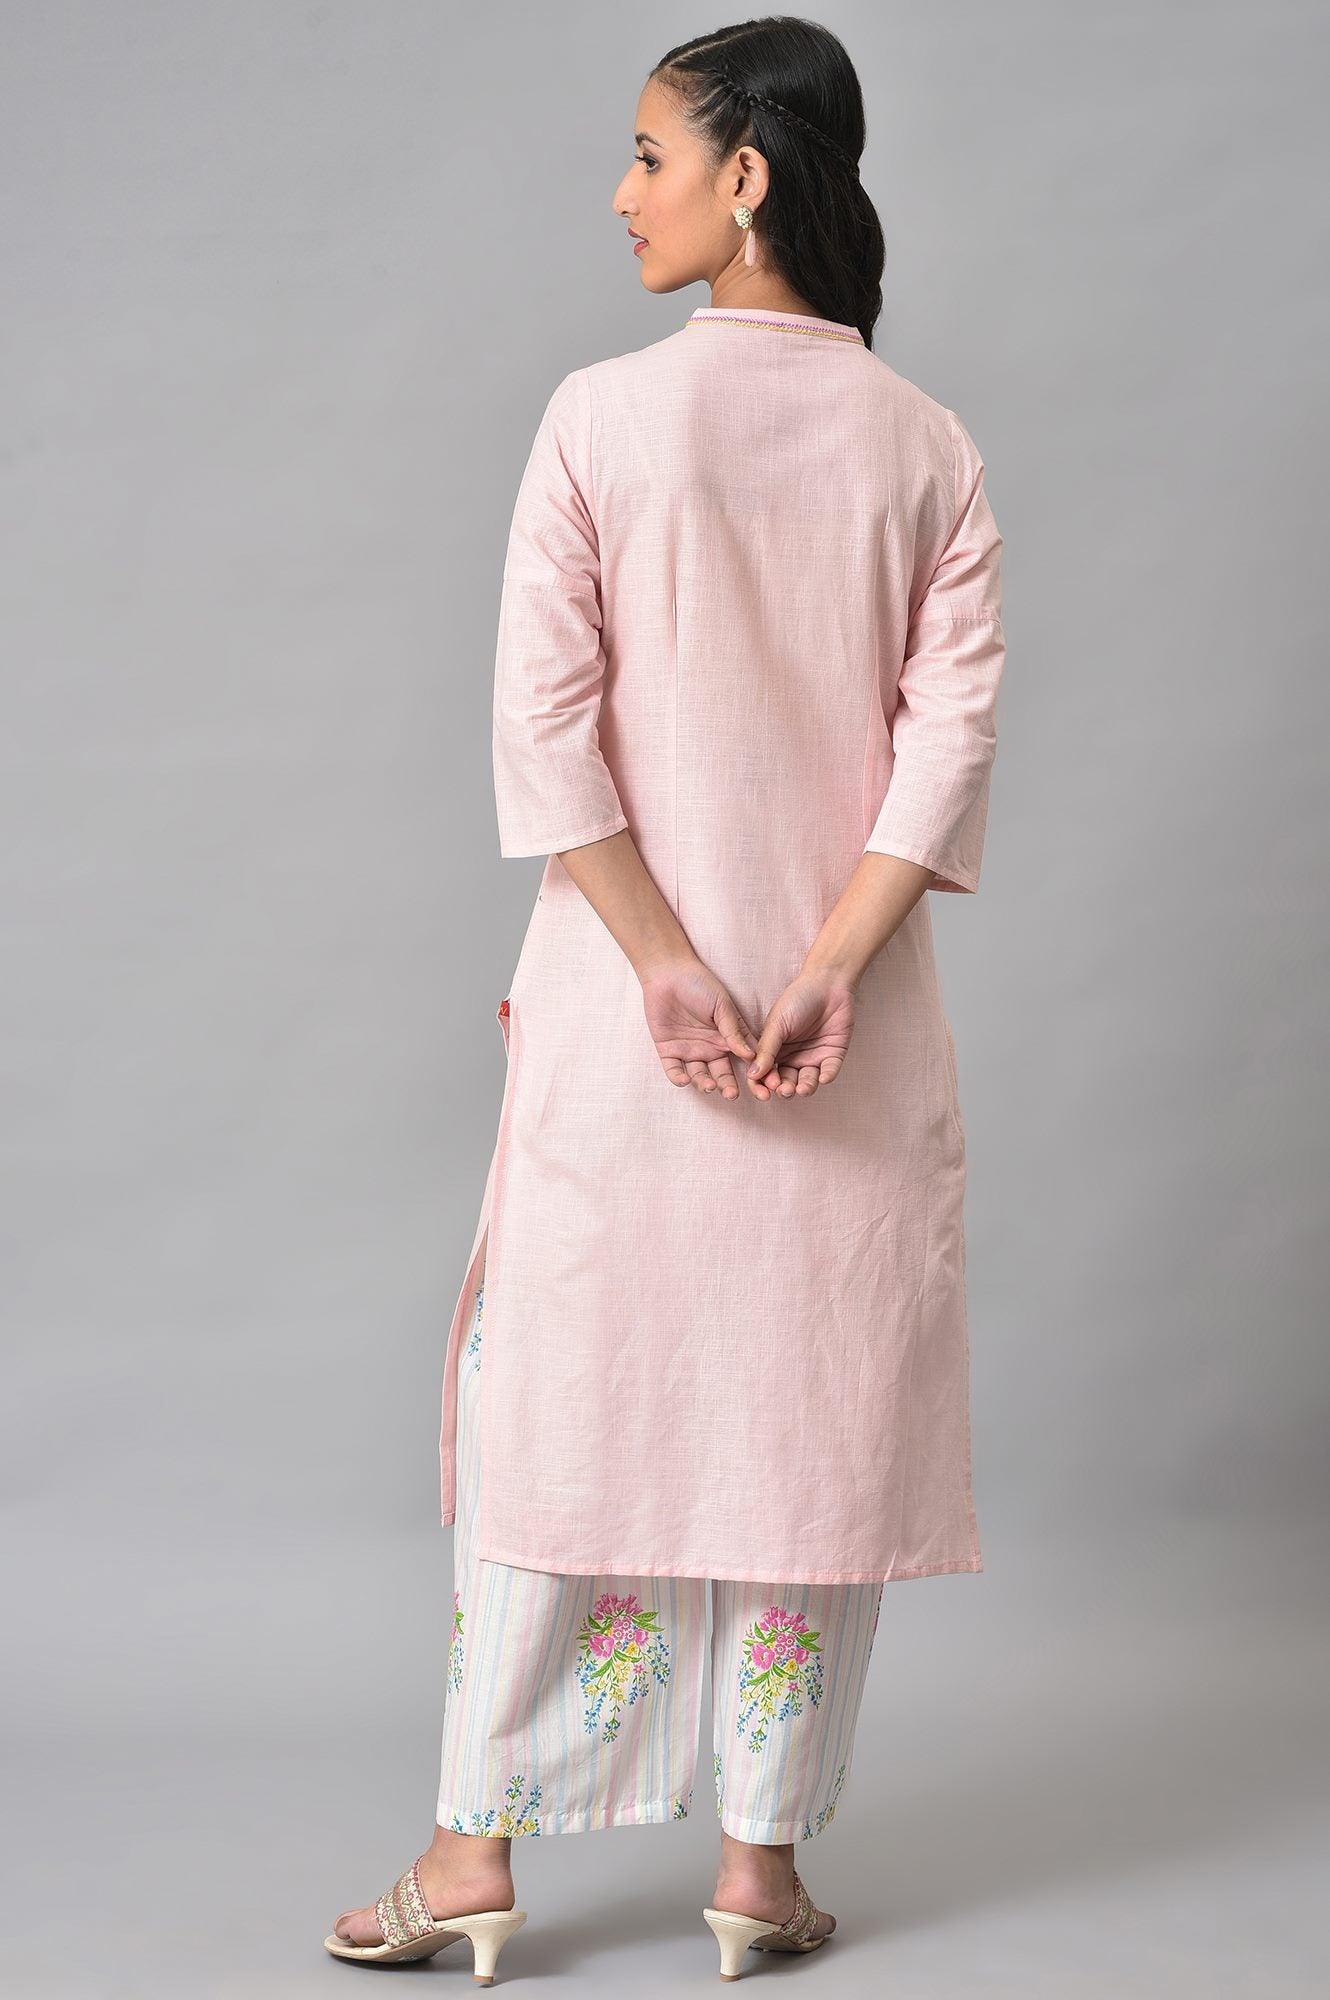 Light Pink Mandarin Collar kurta With Embroidery - wforwoman